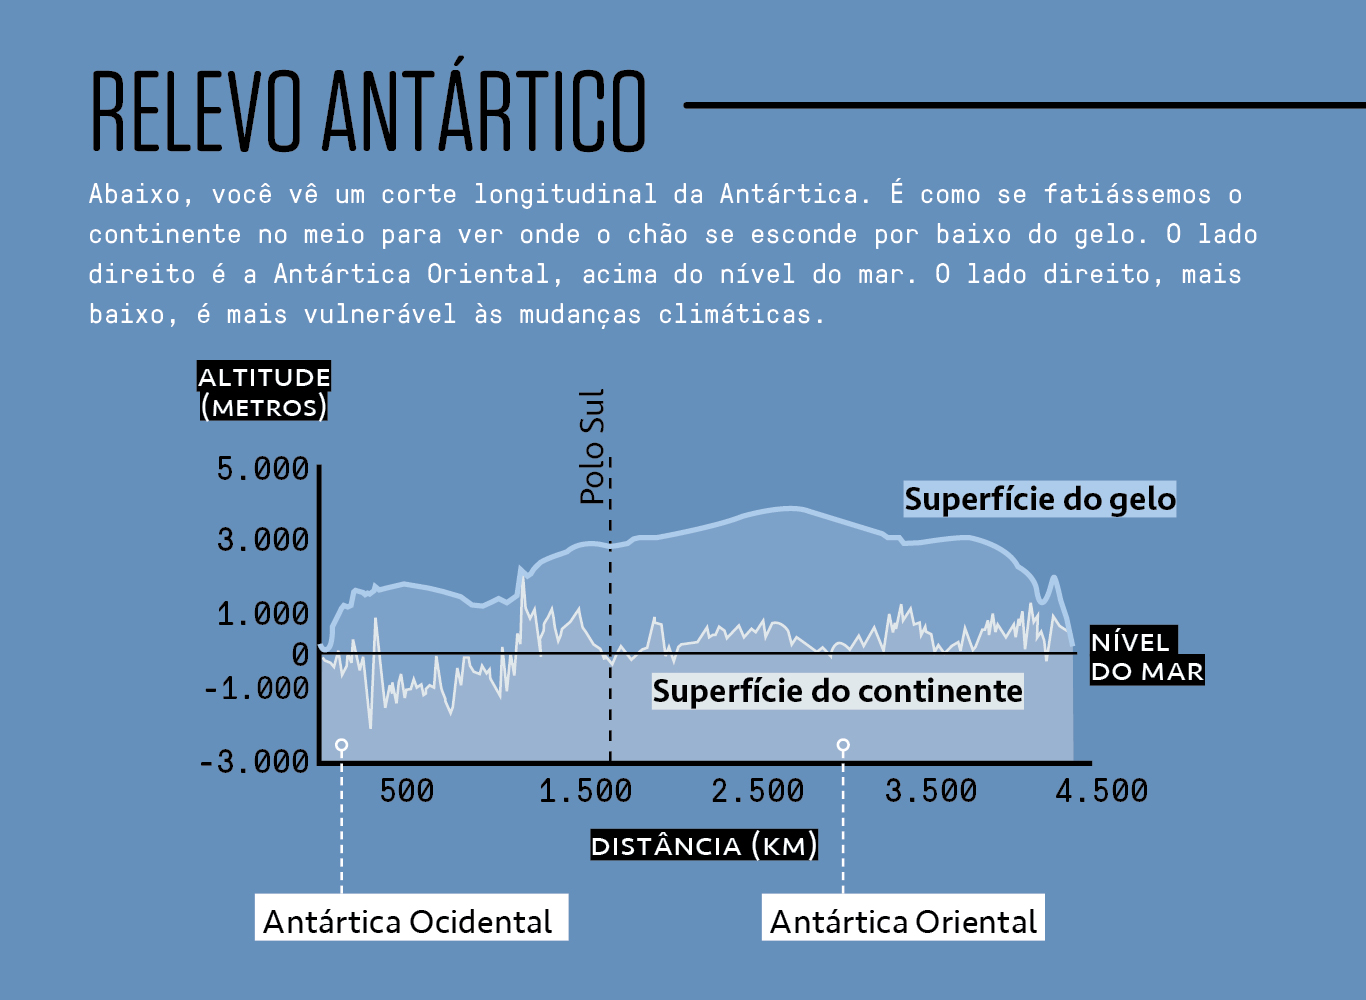 Infográfico mostrando o revelo antártico.